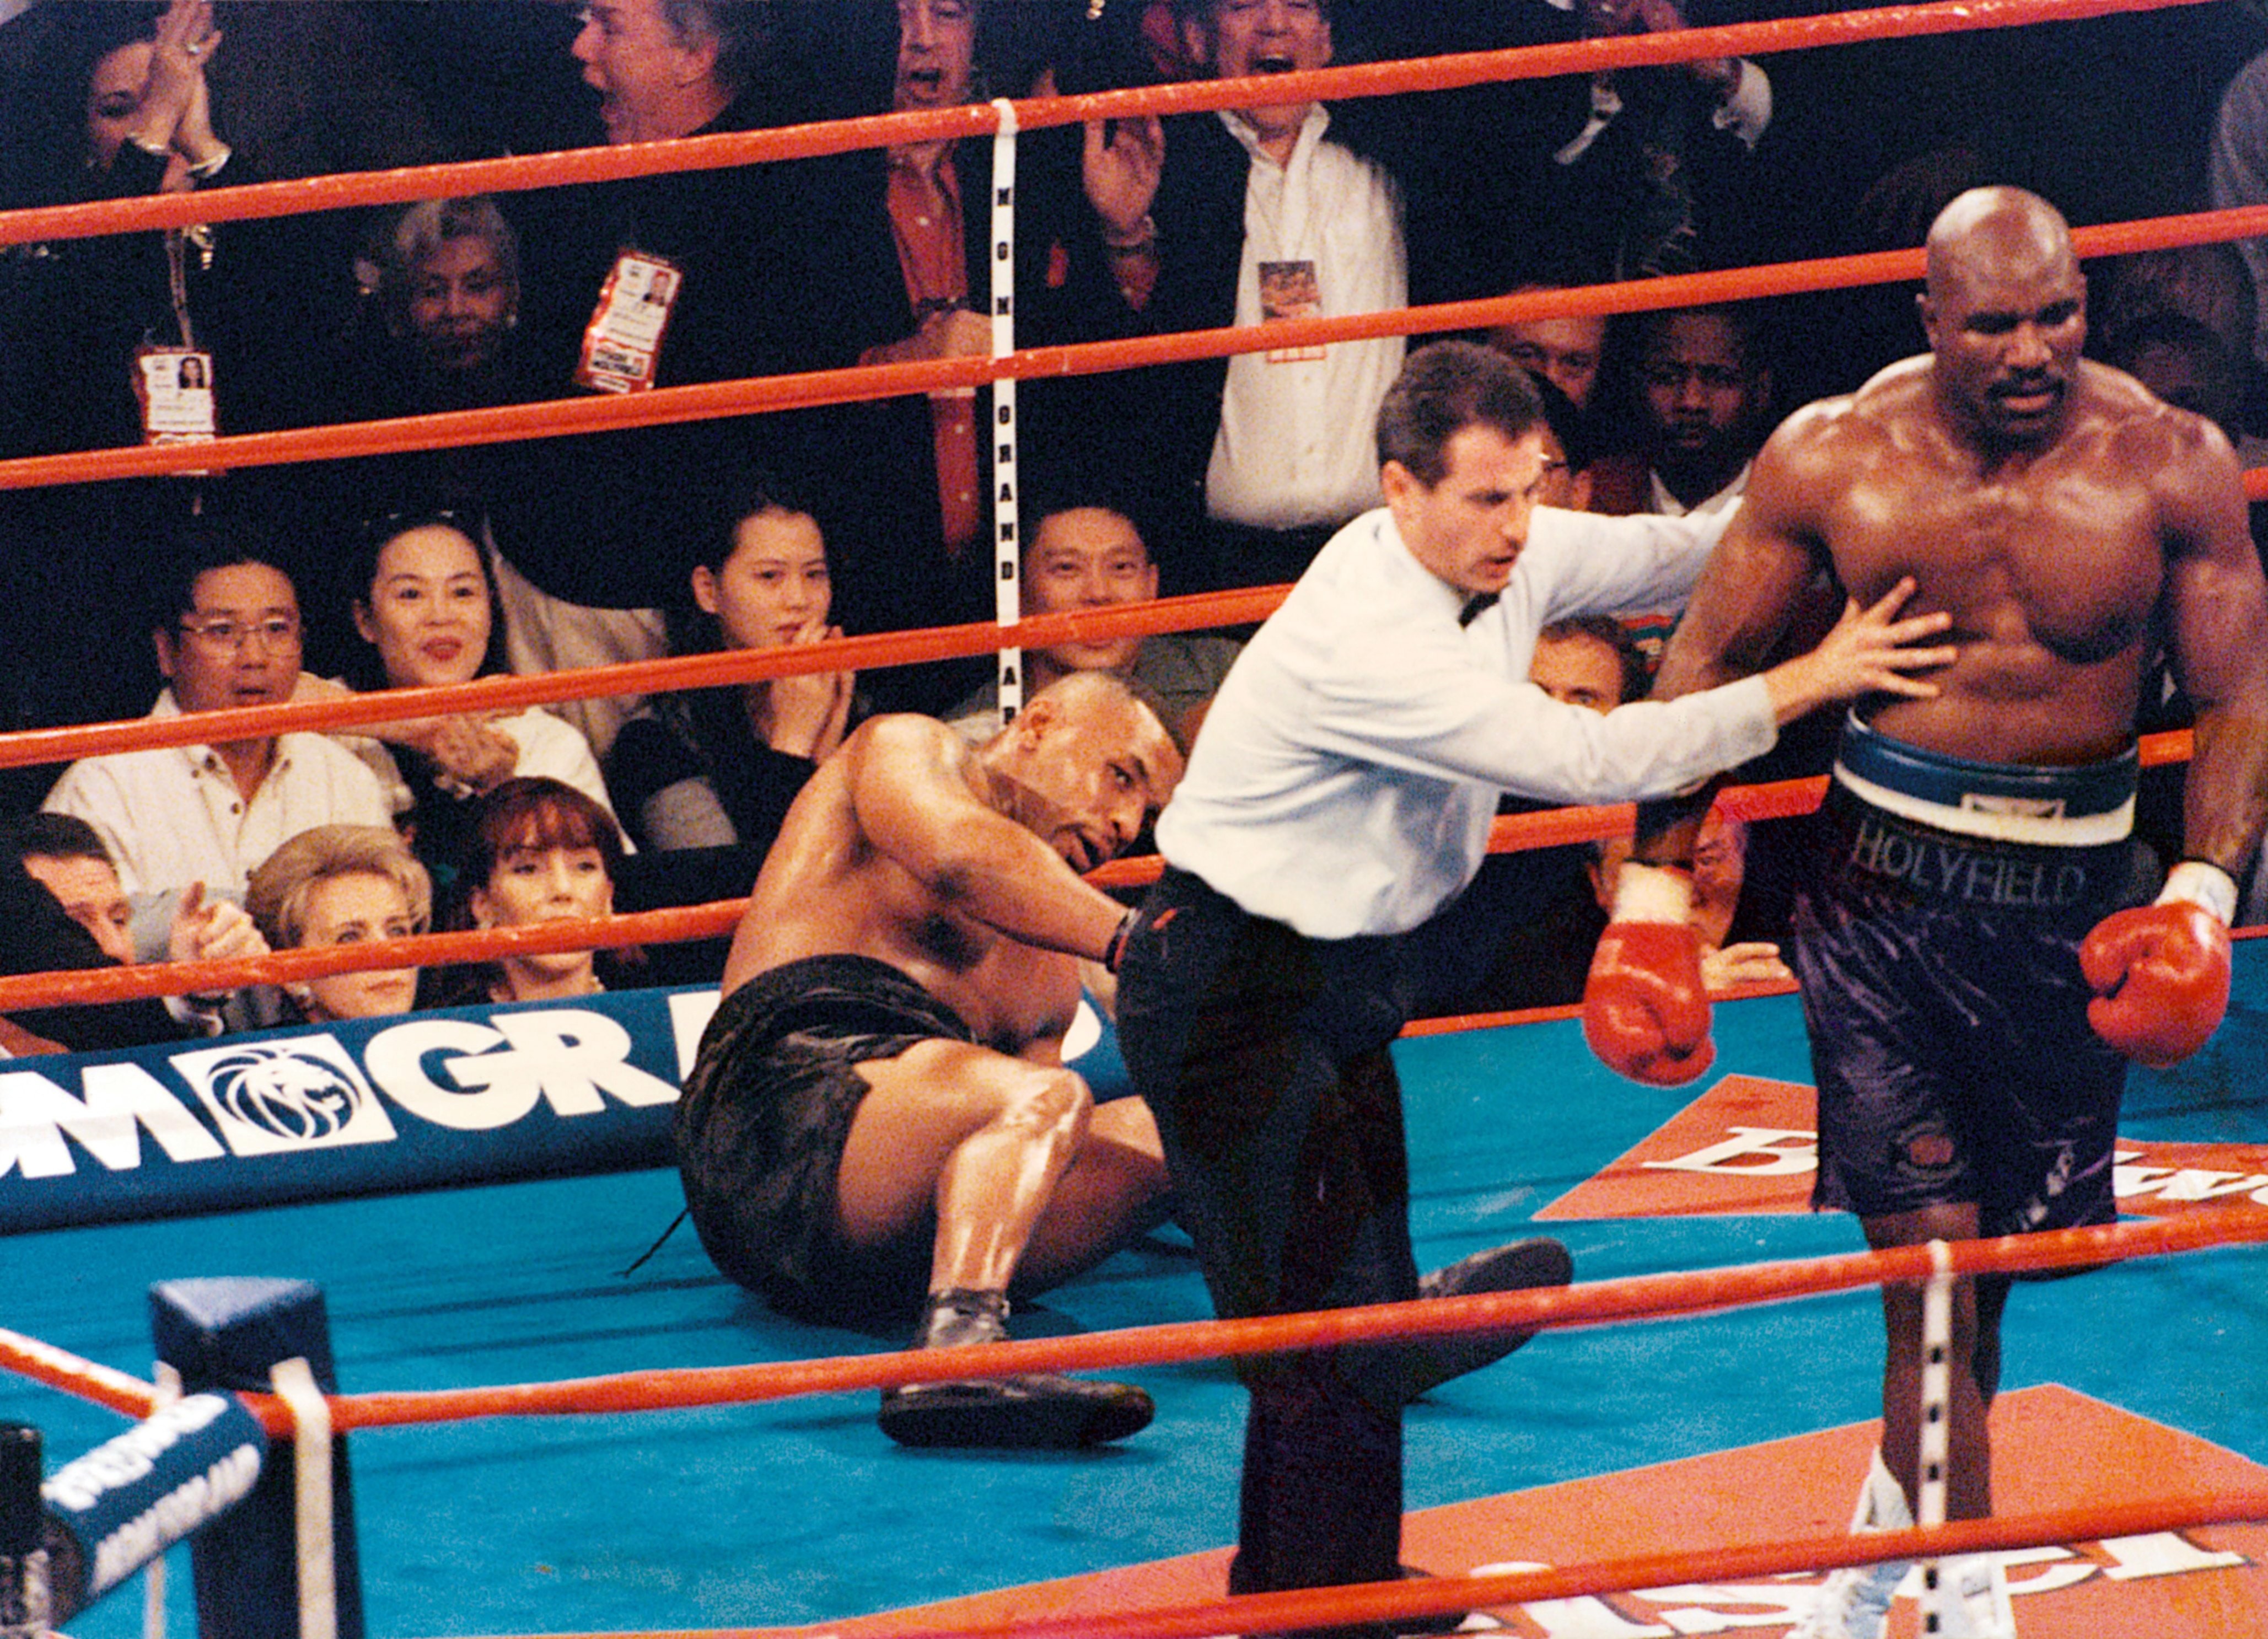 Luta De Holyfield Holyfield revela primeira luta com Tyson quando o rival tinha 17 anos -  Monet | Notícias